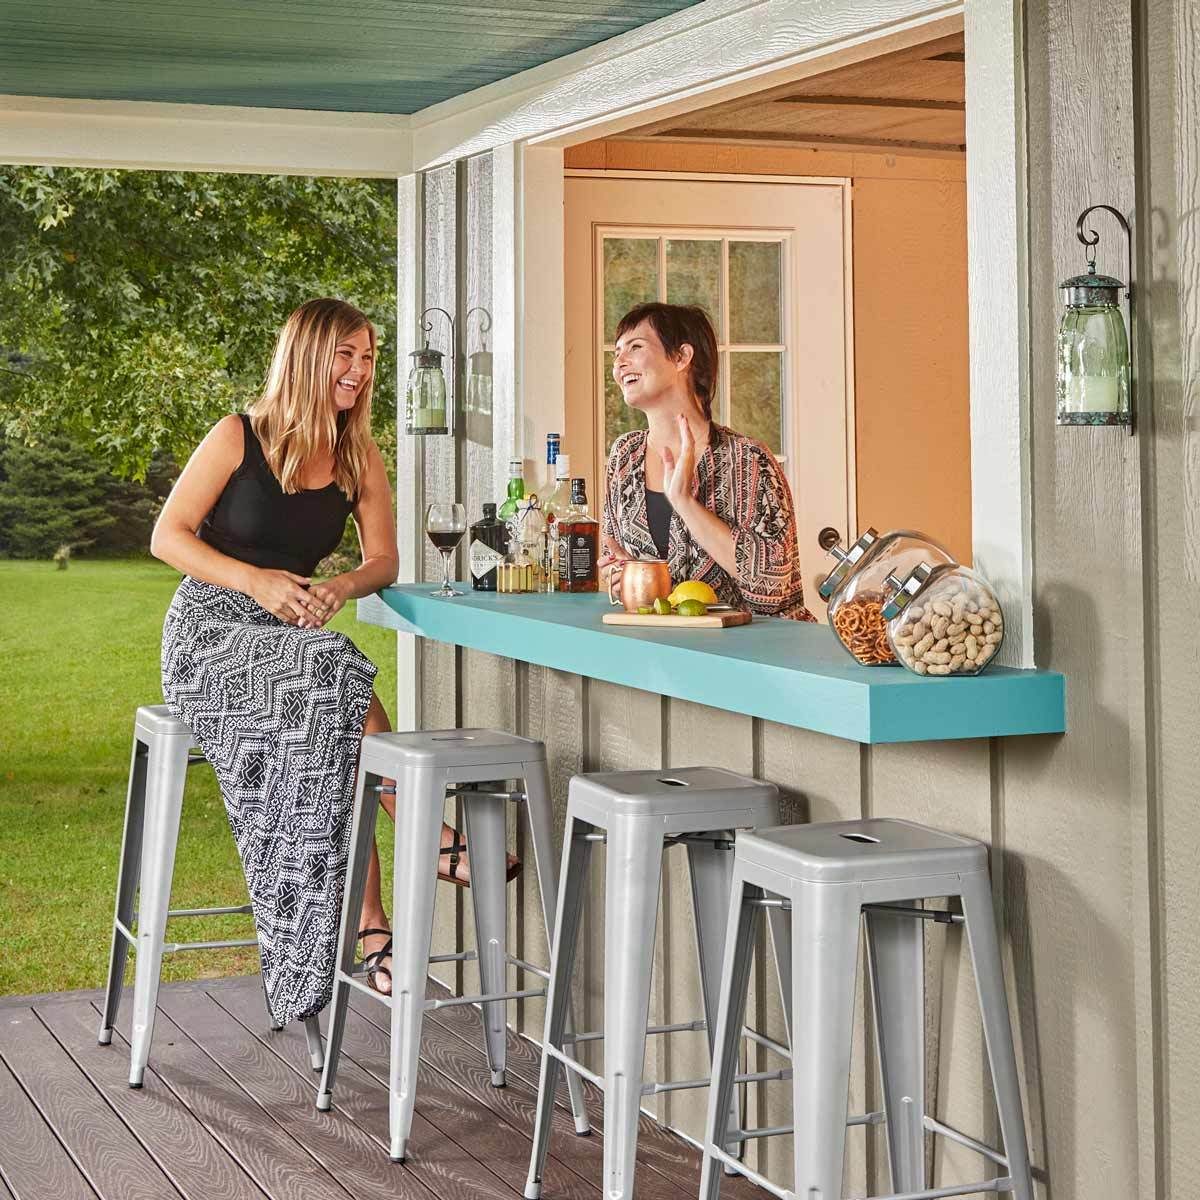 10 Inspiring Outdoor Bar Ideas — The Family Handyman